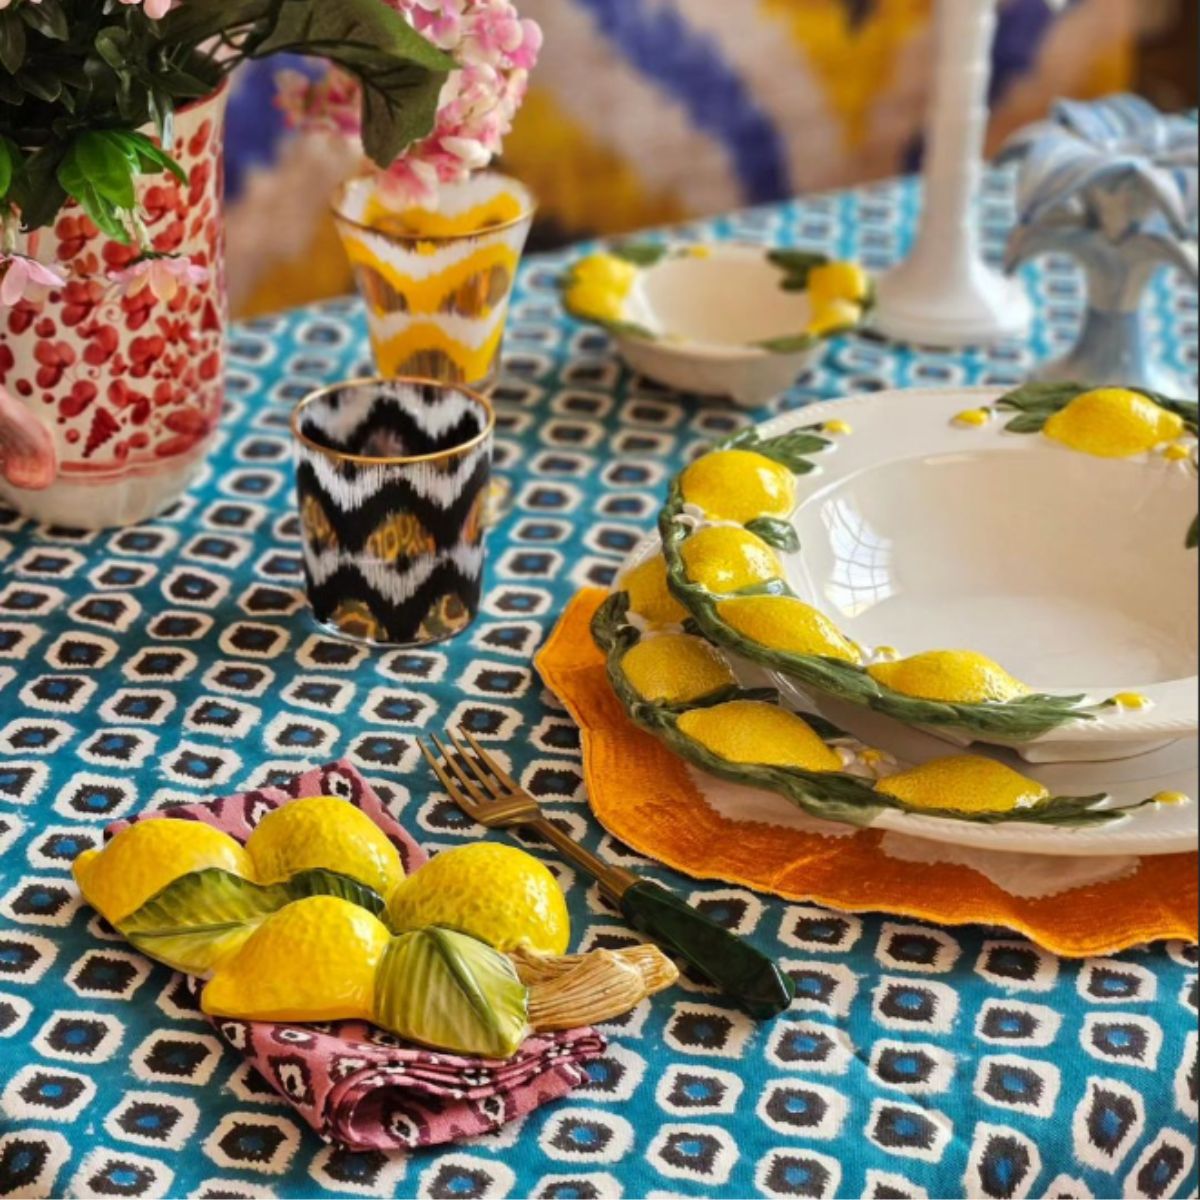 Hand Painted Lemon Ceramic Presentation Plate - Les Ottomans